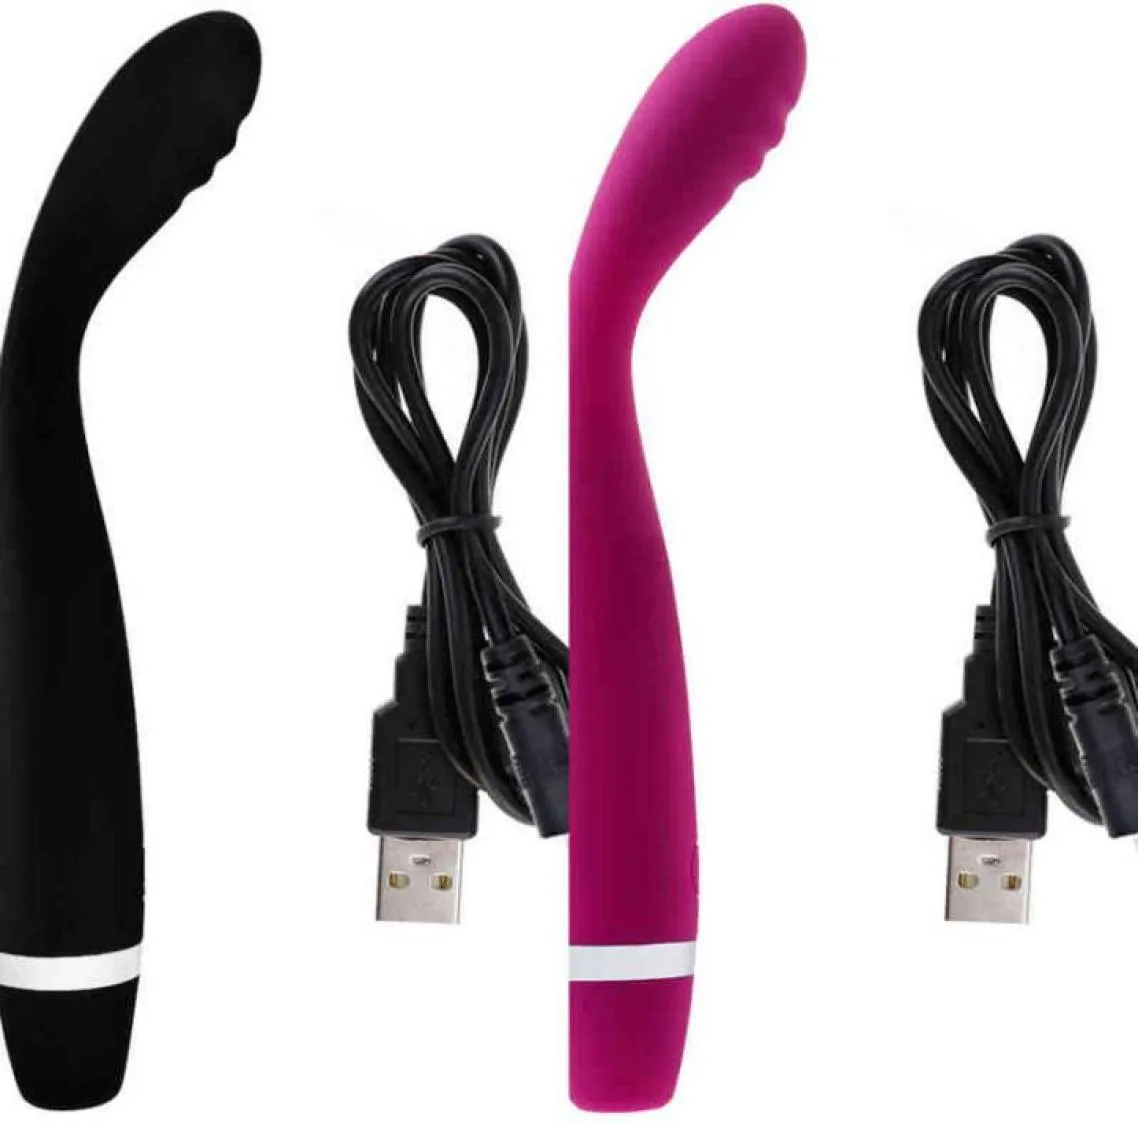 Nxy Sex Vibrators G女性用のスポットフィンガーバイブレーターおもちゃUSB充電式ソフトAVロッドマジックワンド女性マスターベーションエロティック製品4246350